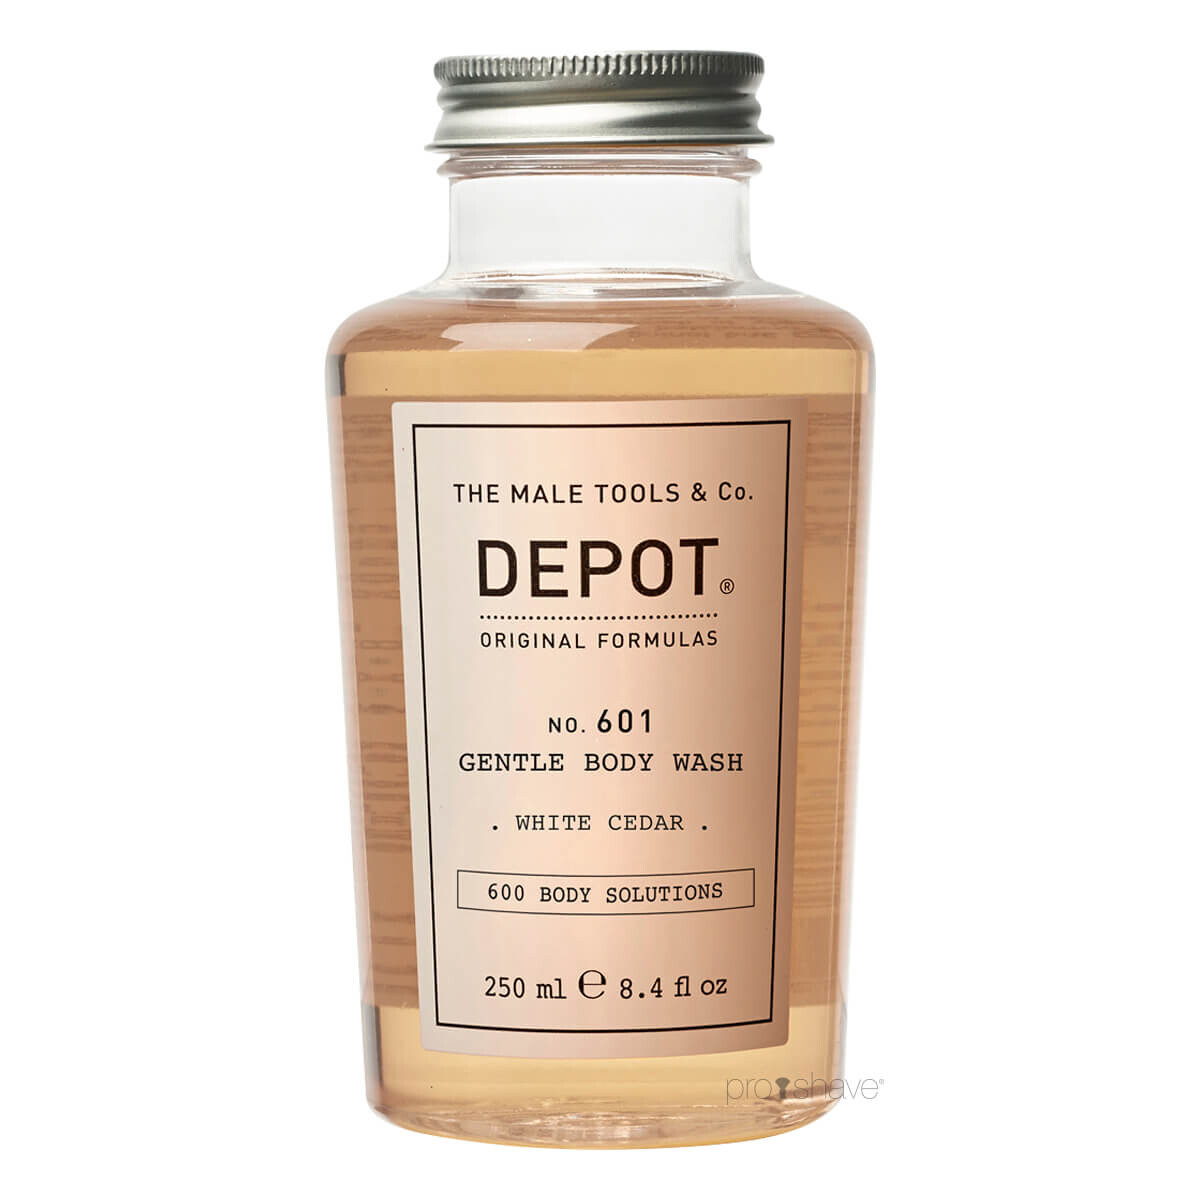 Billede af Depot Gentle Body Wash, White Cedar, No. 601, 250 ml.